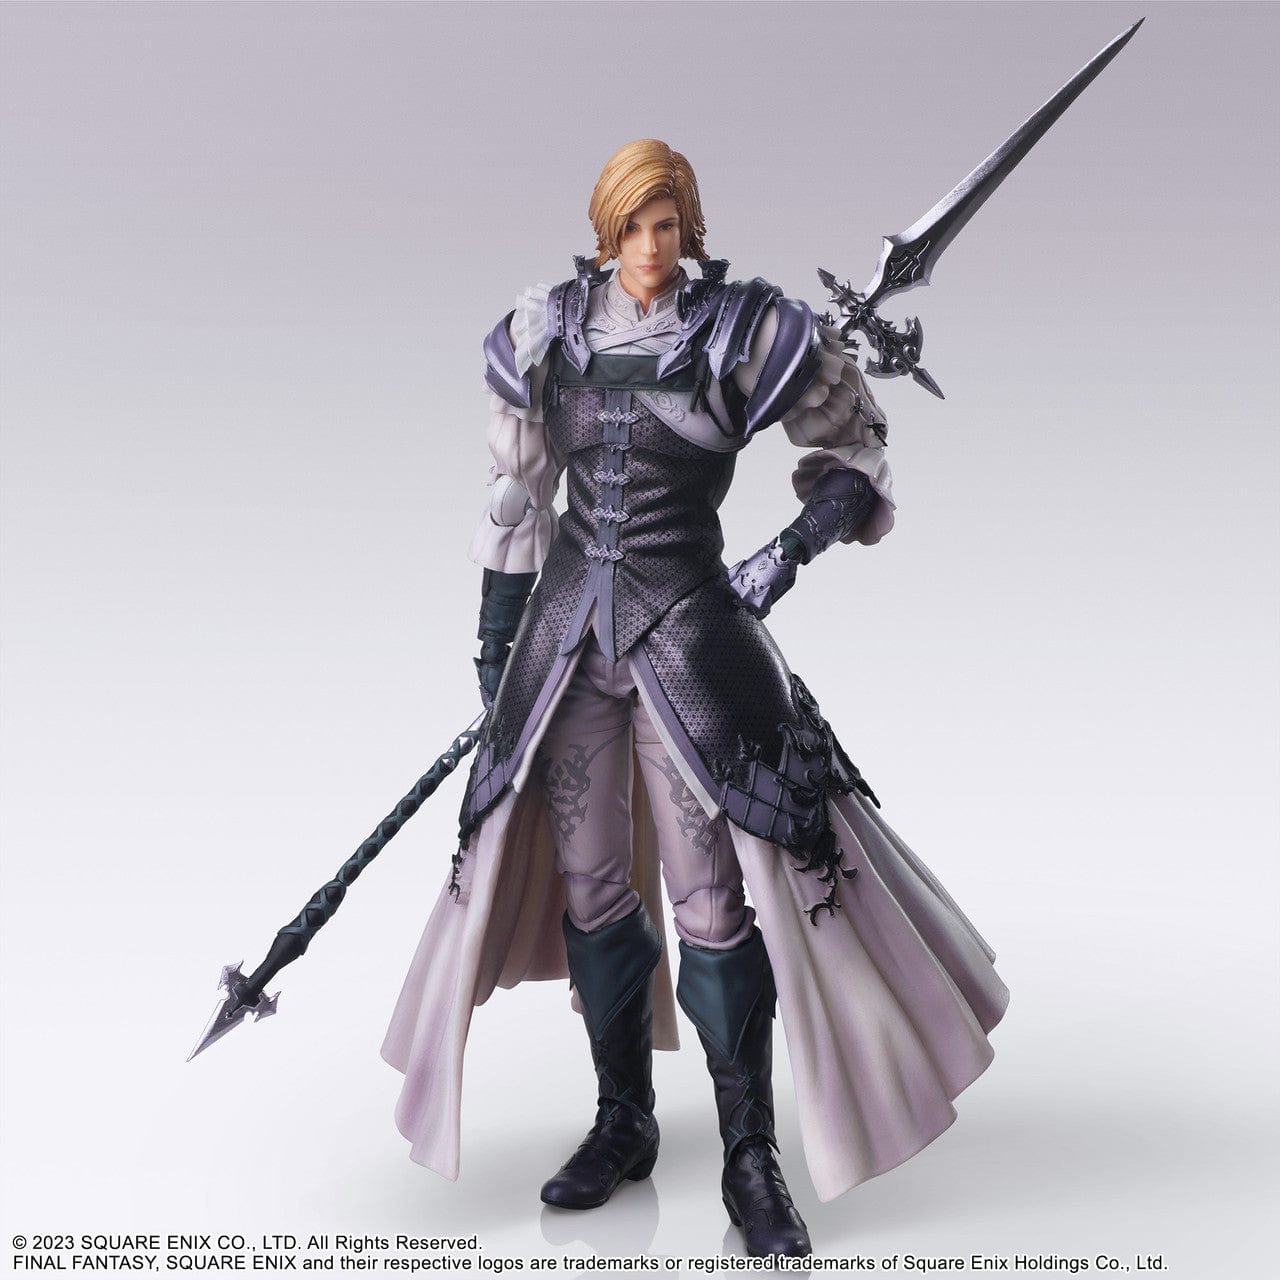 Square Enix FINAL FANTASY XVI BRING ARTS™ Action Figure - DION LESAGE